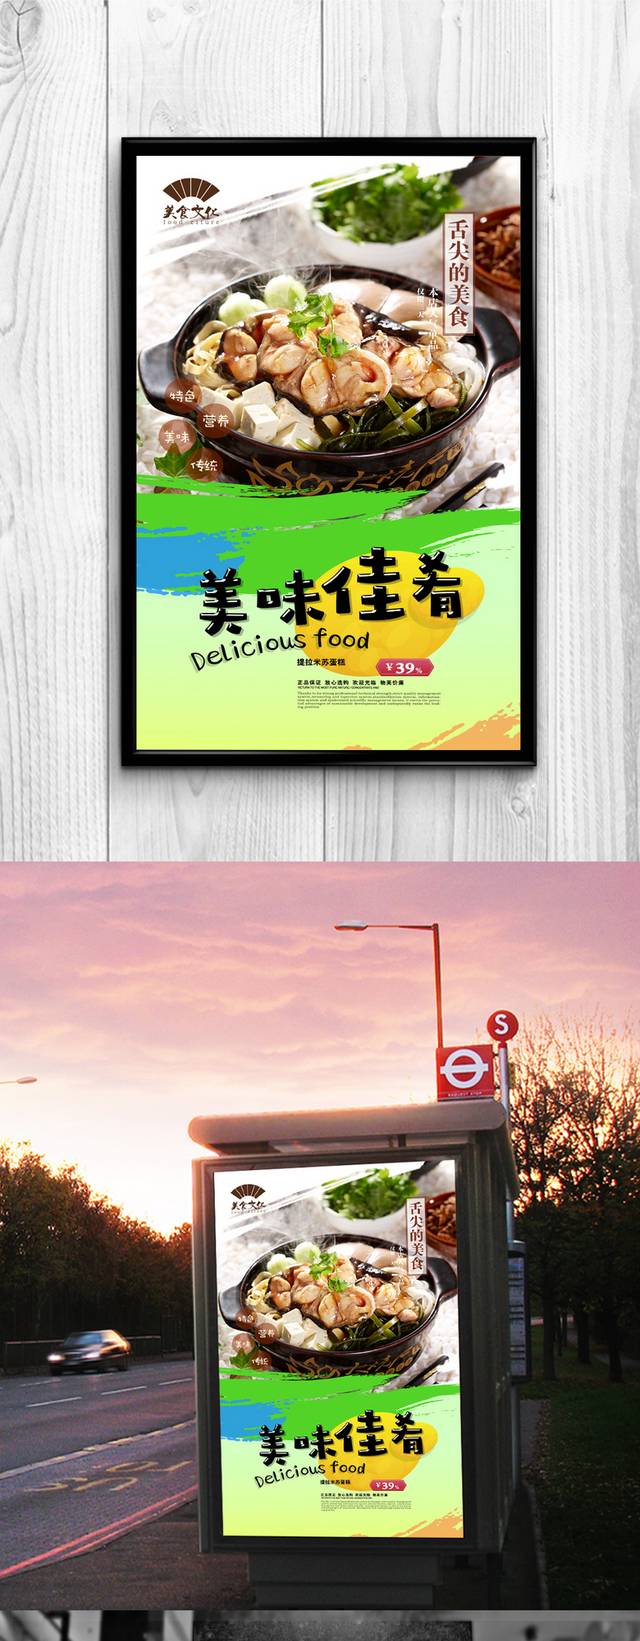 经典砂锅宣传海报设计psd